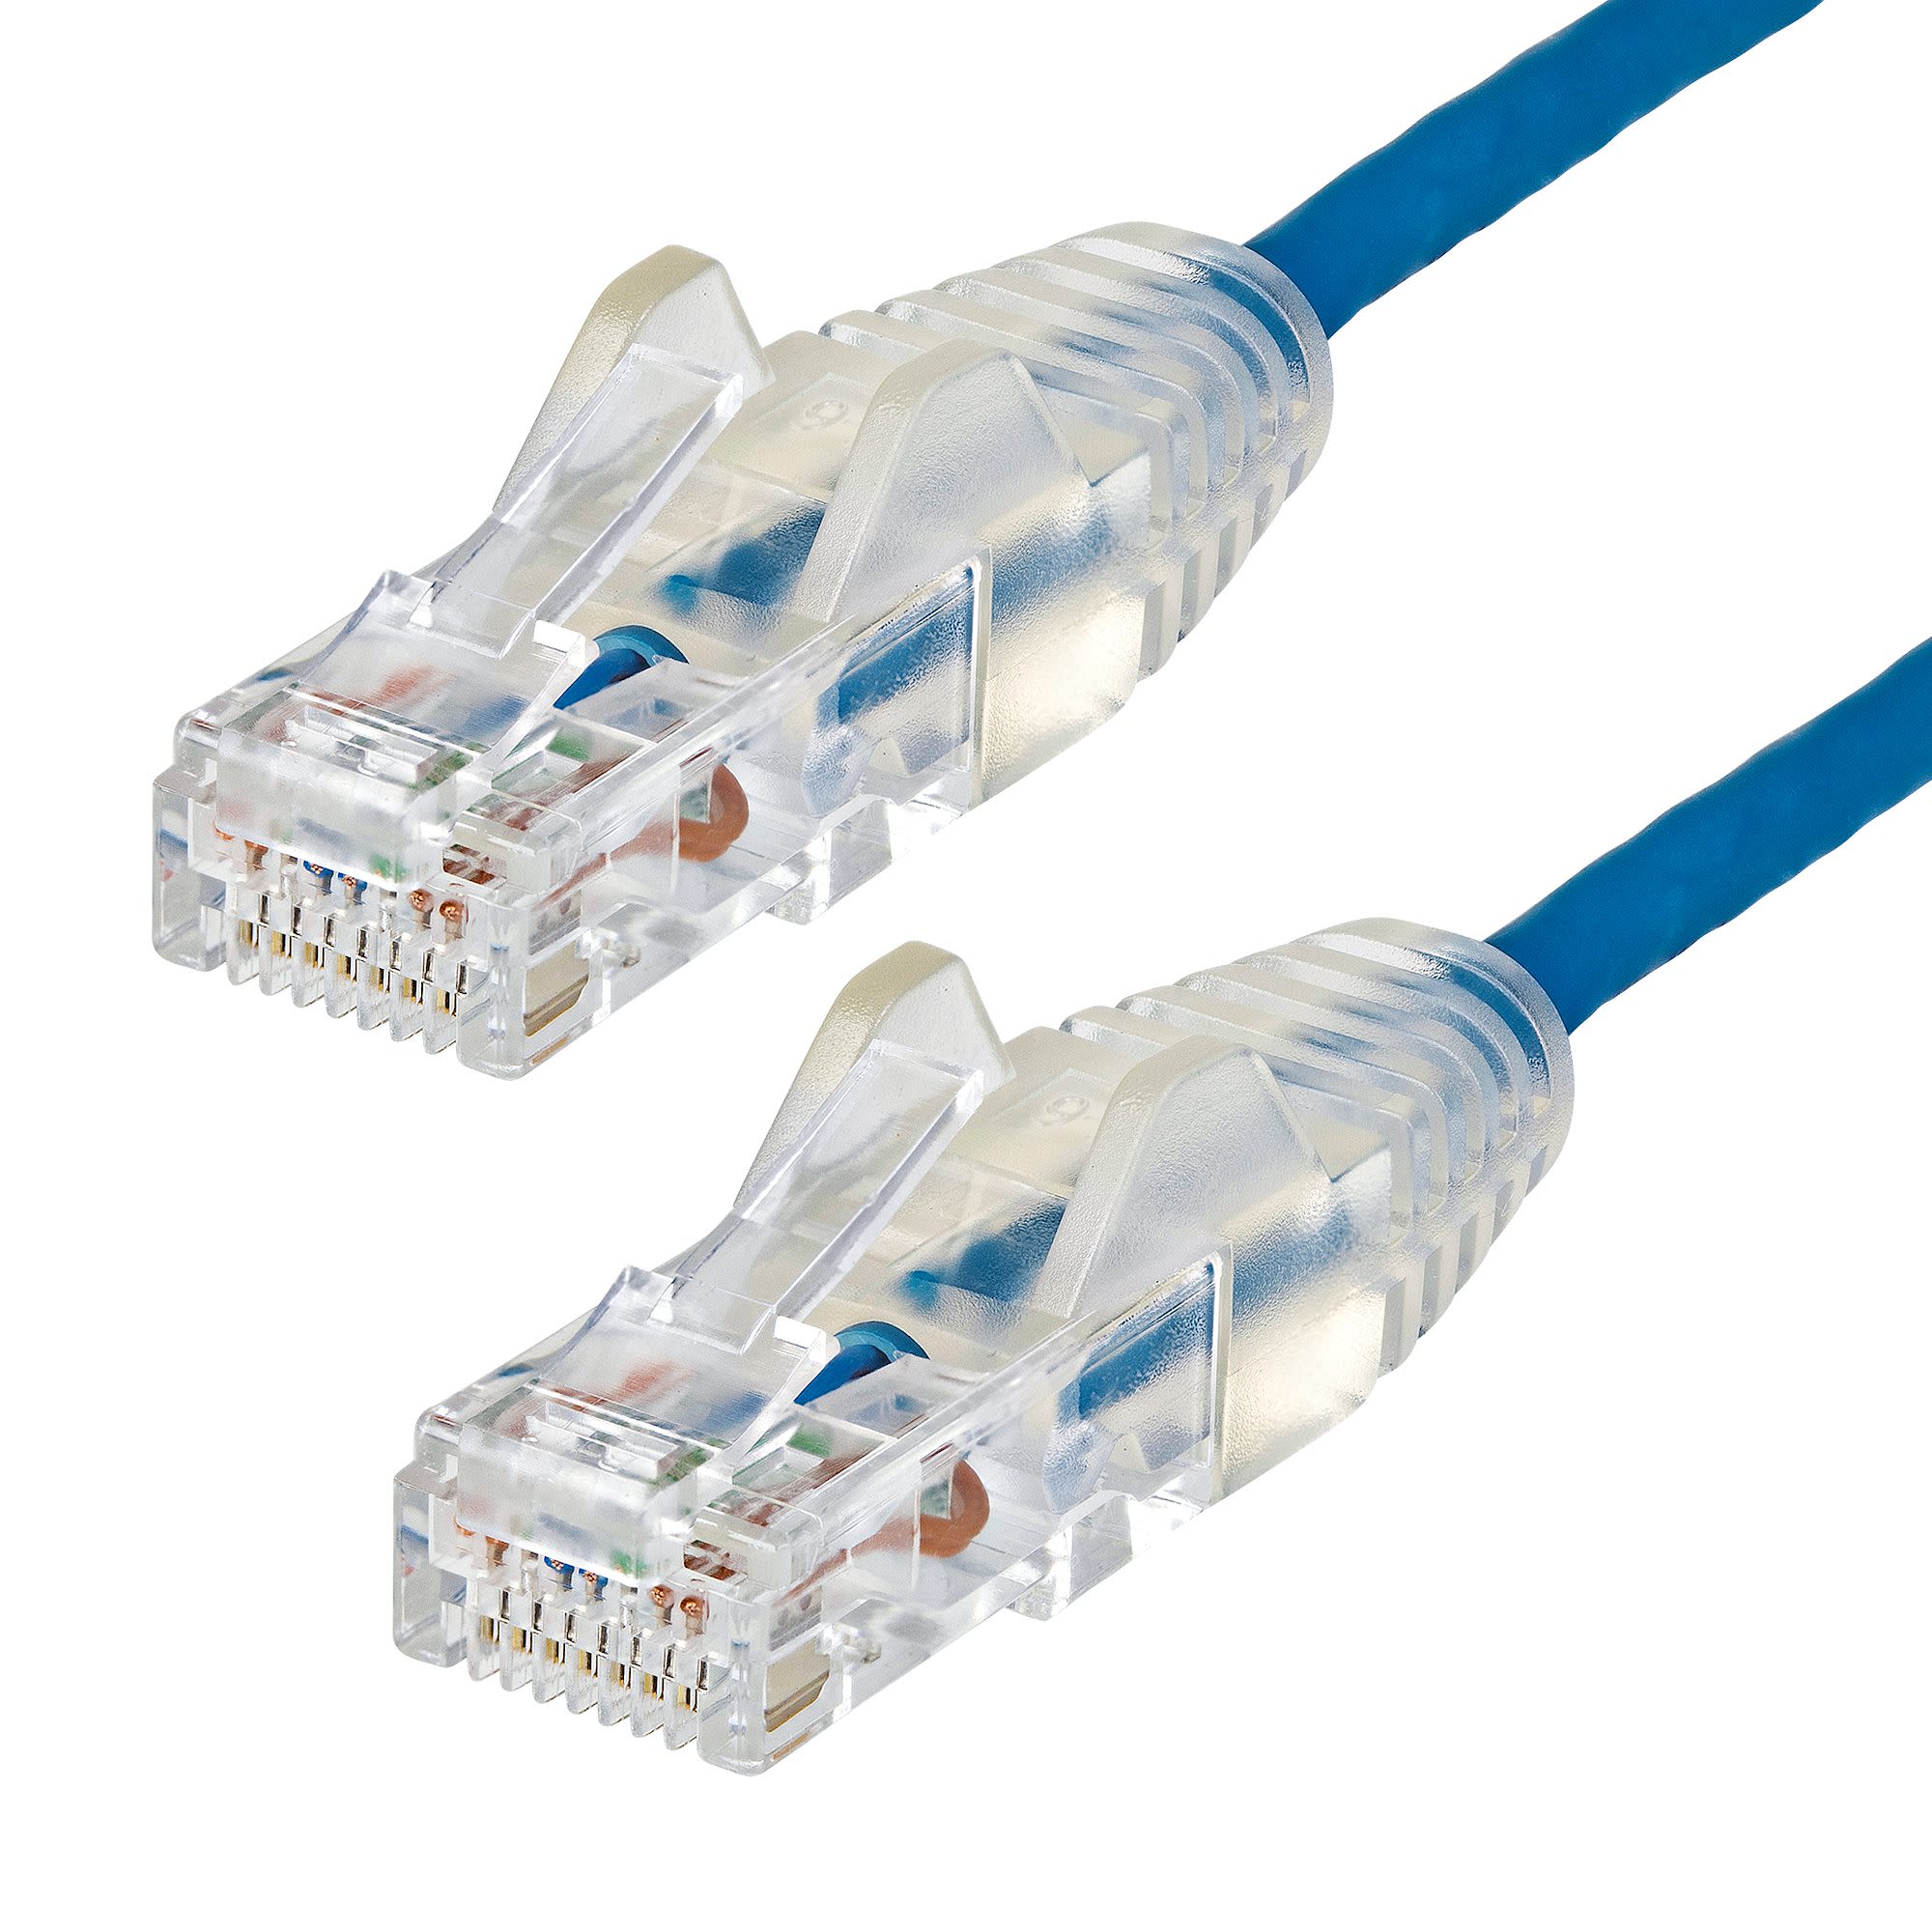 StarTech.com Cat6 Ethernet Cable Straight, RJ45 to Straight RJ45, U/UTP Shield, Blue Al(OH)3 (Aluminium Hydroxide) EVA